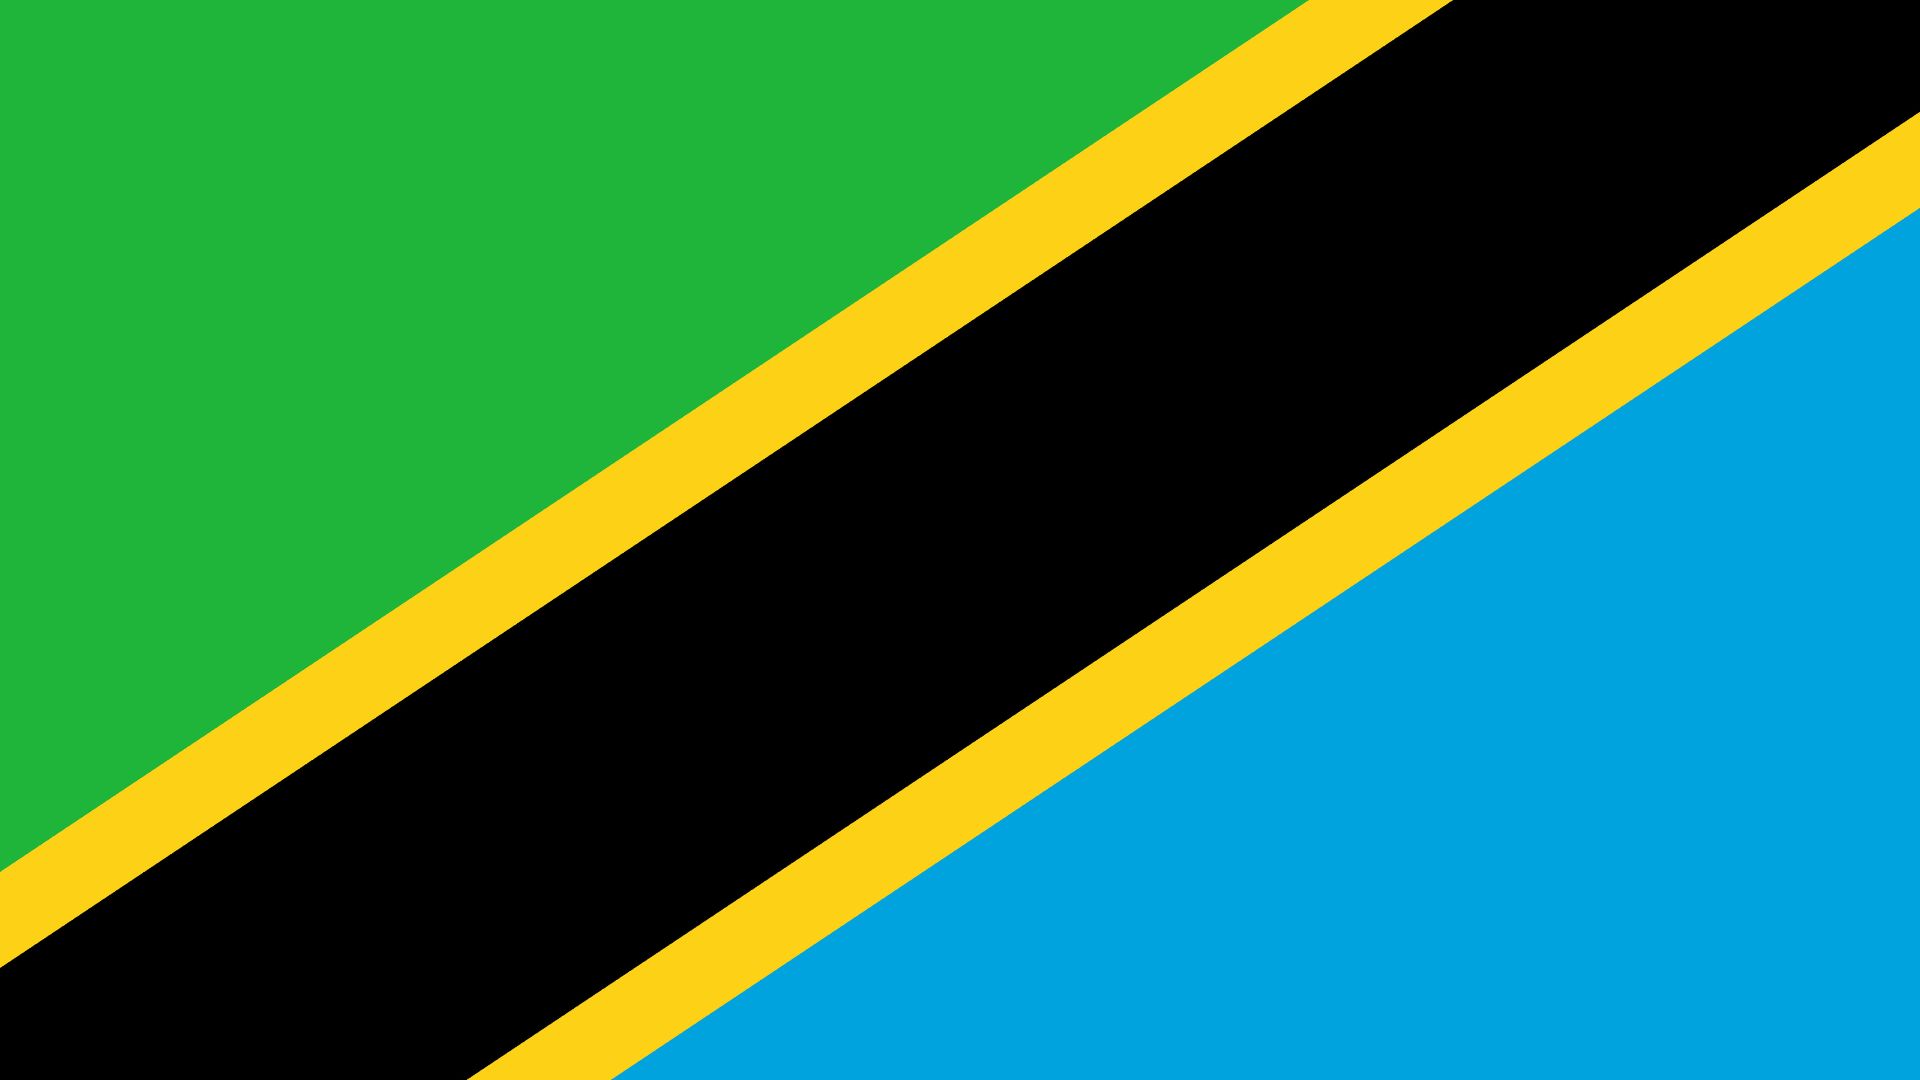 A bandeira da Tanzânia está dividida na diagonal por uma faixa amarela com preto. Ela possui um triângulo superior na cor verde e um triângulo inferior na cor azul. O verde representa a vegetação natural, o amarelo representa os ricos depósitos minerais, o preto representa a cor da pele dos tanzanianos e o azul representa os lagos, os rios e o Oceano Índico.